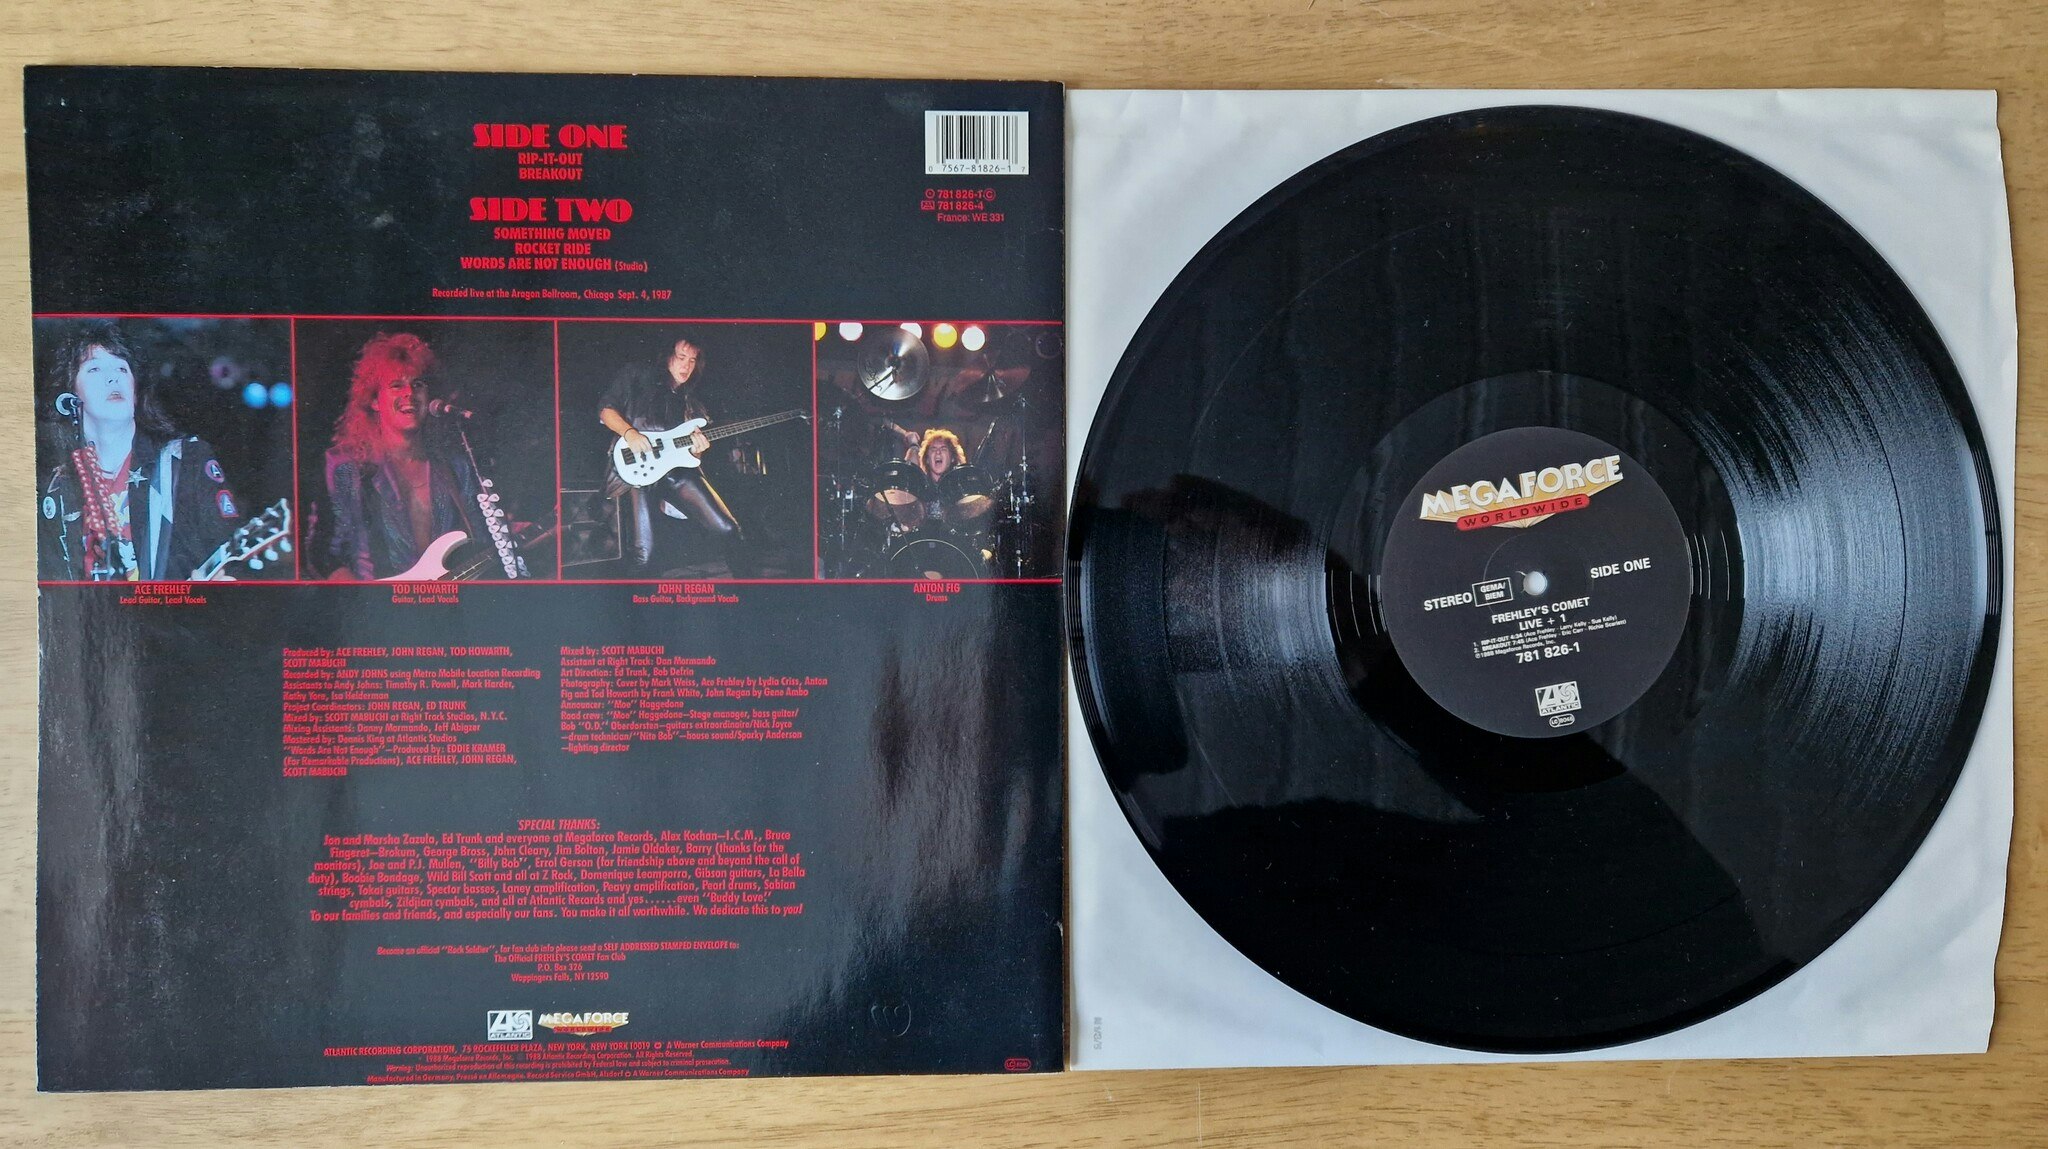 Frehley's Comet, Live + 1. Vinyl LP